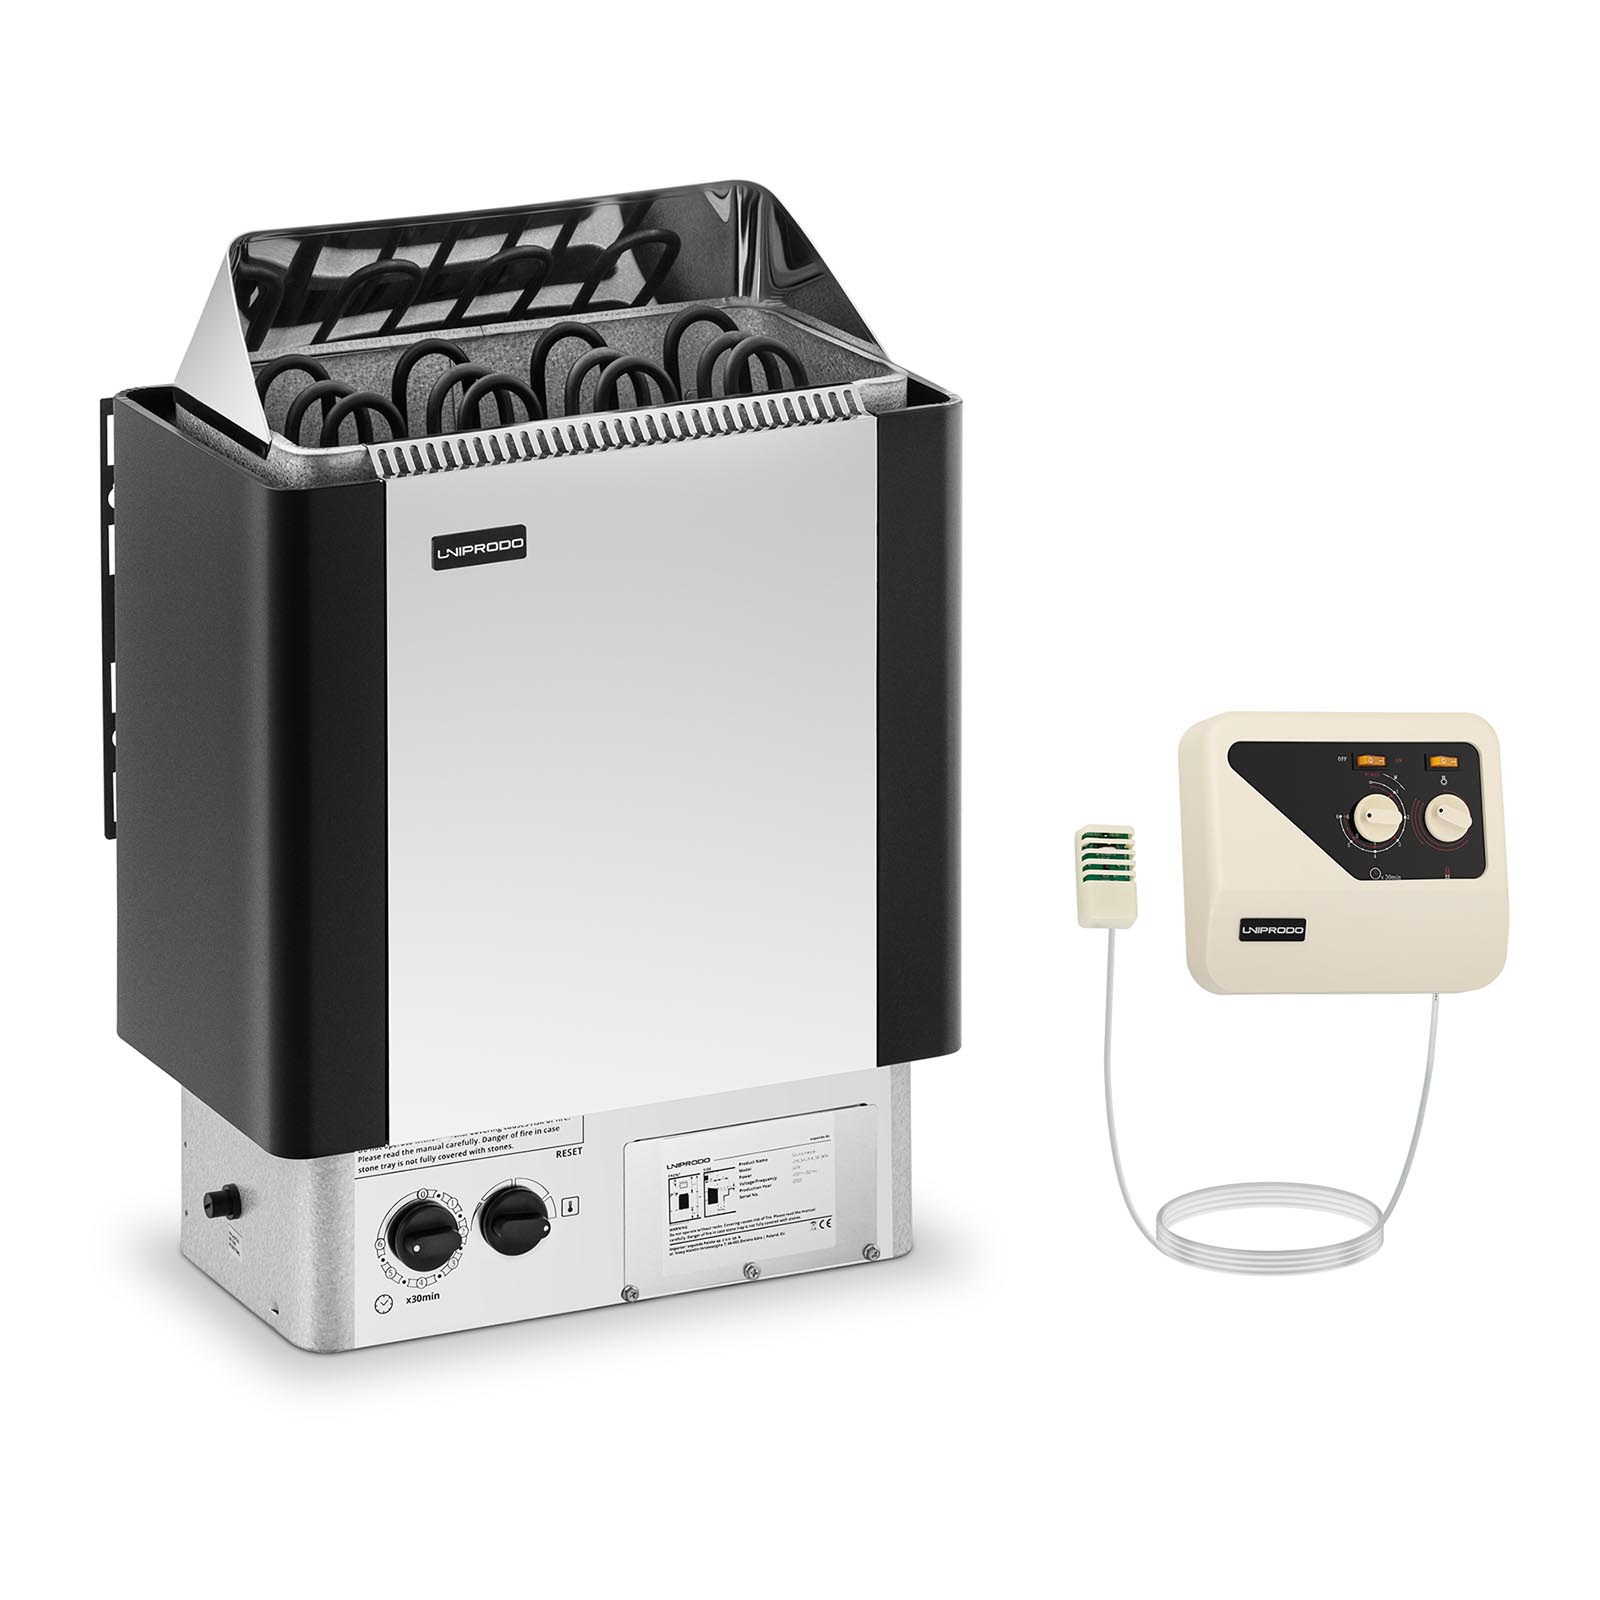 Set Sauna Heater with External Sauna Control Panel - 6 kW - 30 to 110 °C